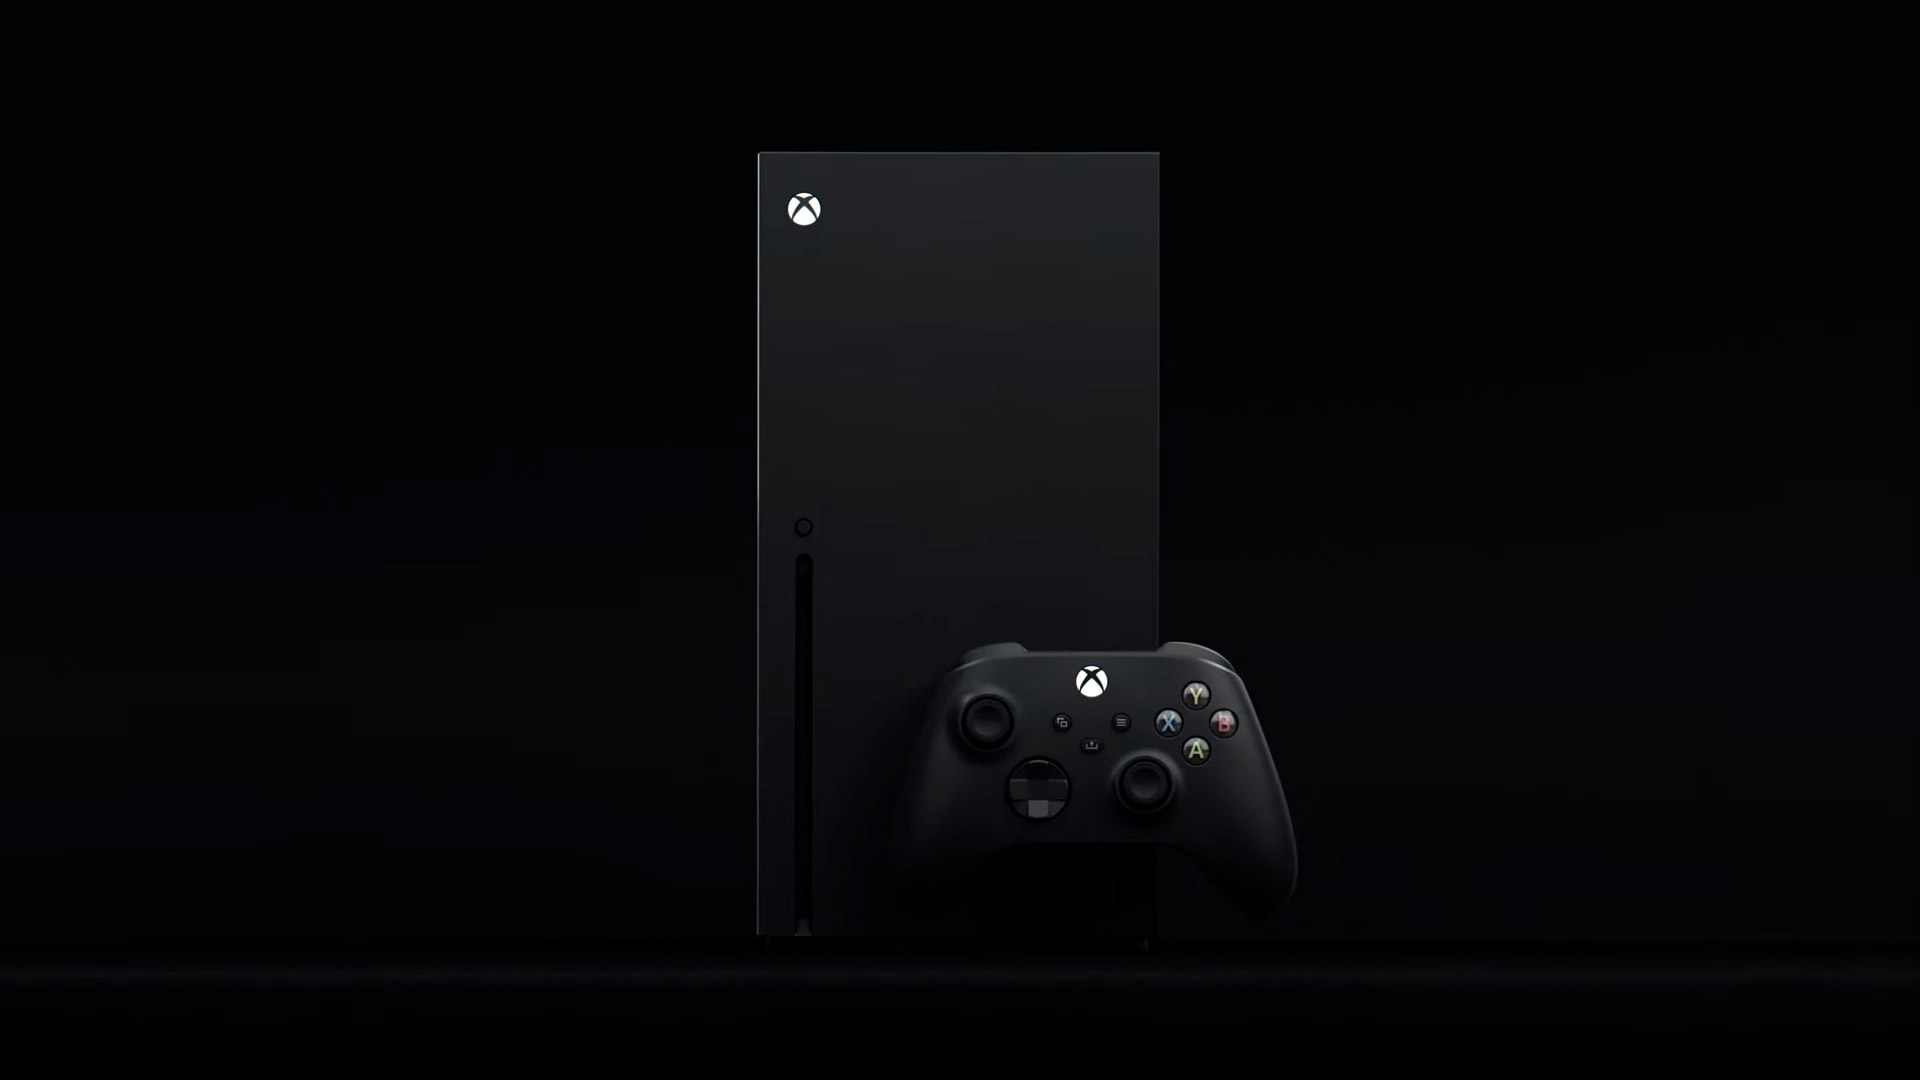 Xbox Series S, Xbox Series X xəbərləri Tgs 2020-dən əvvəl gələcək - Şayiələr